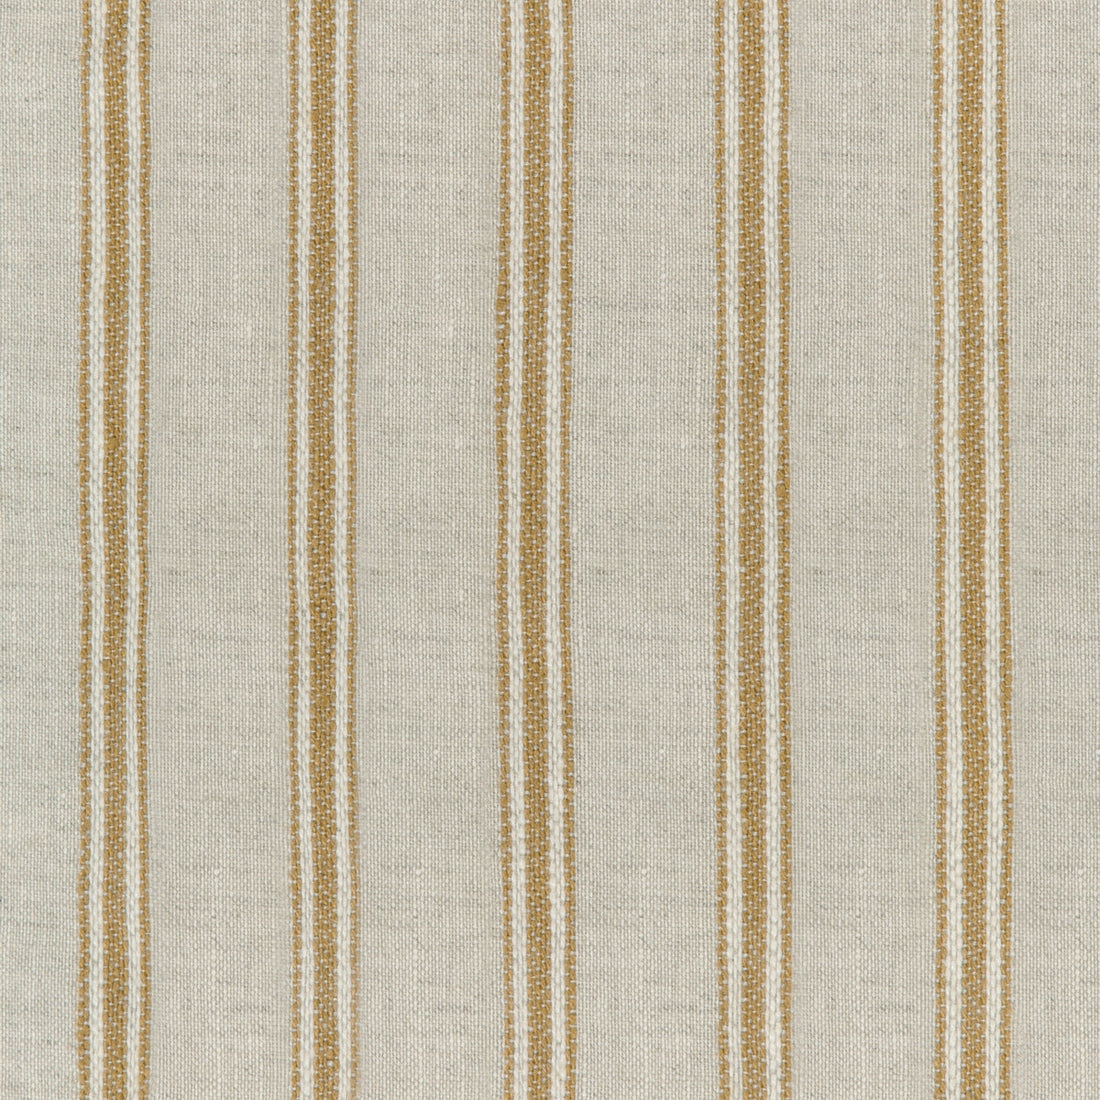 Kravet Design fabric in 4842-416 color - pattern 4842.416.0 - by Kravet Design